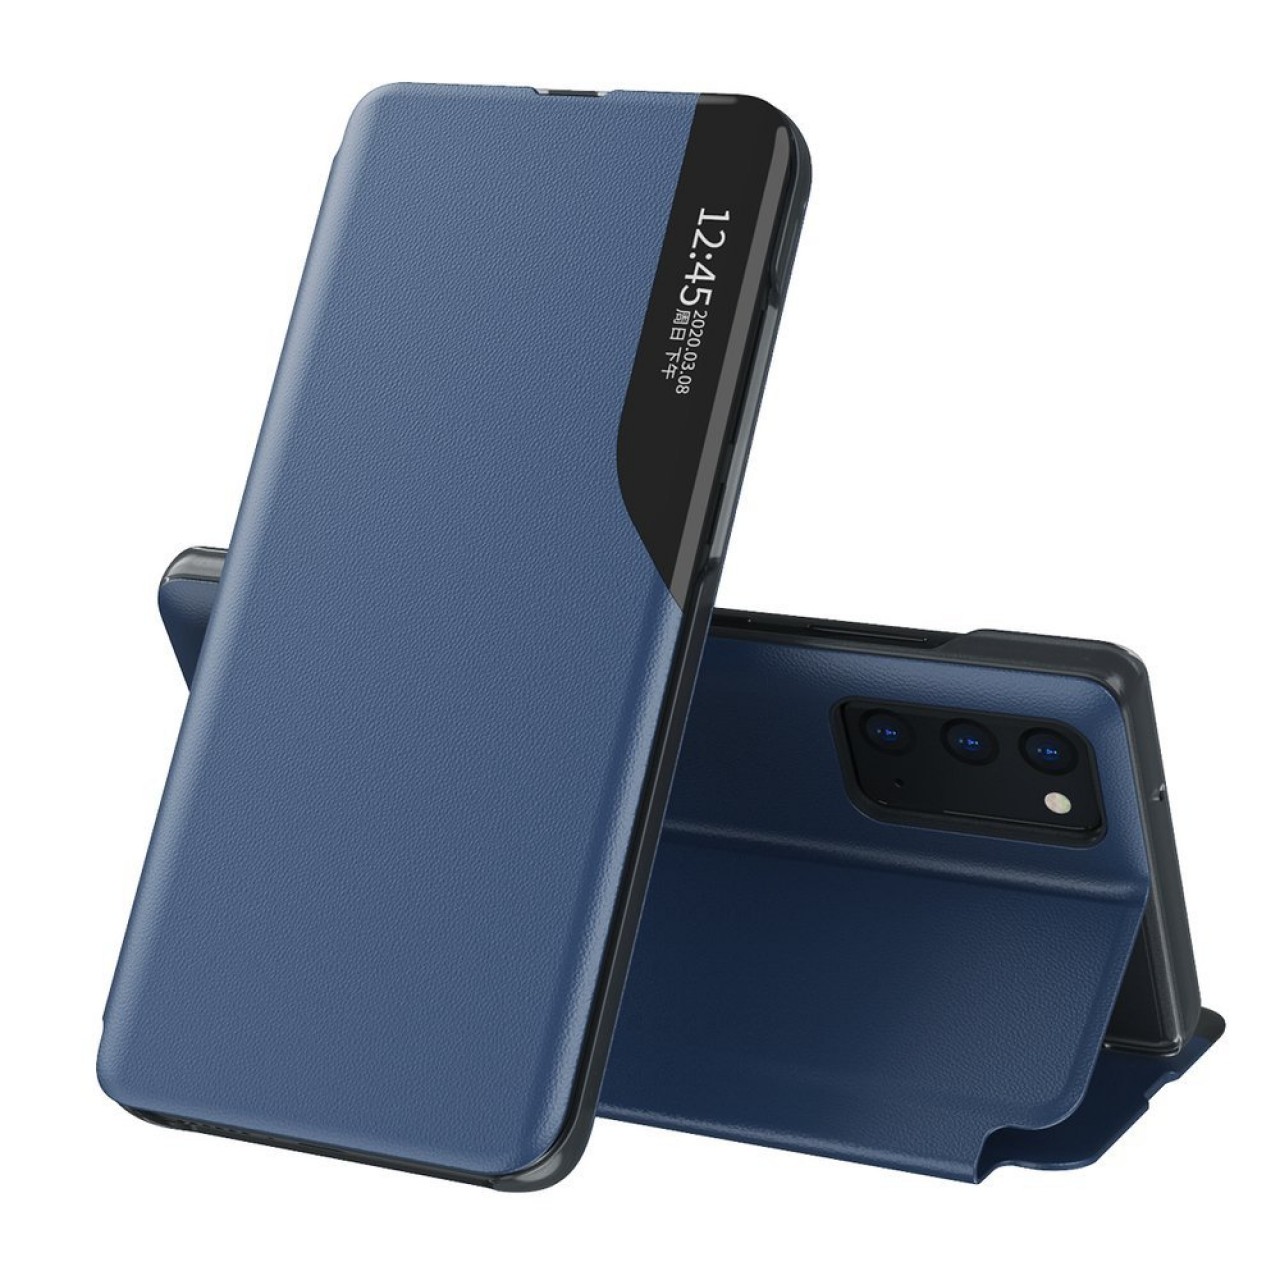 Θήκη Samsung Galaxy A12 Eco Leather View Case elegant bookcase type case with kickstand - 5940 - Μπλε - ΟΕΜ